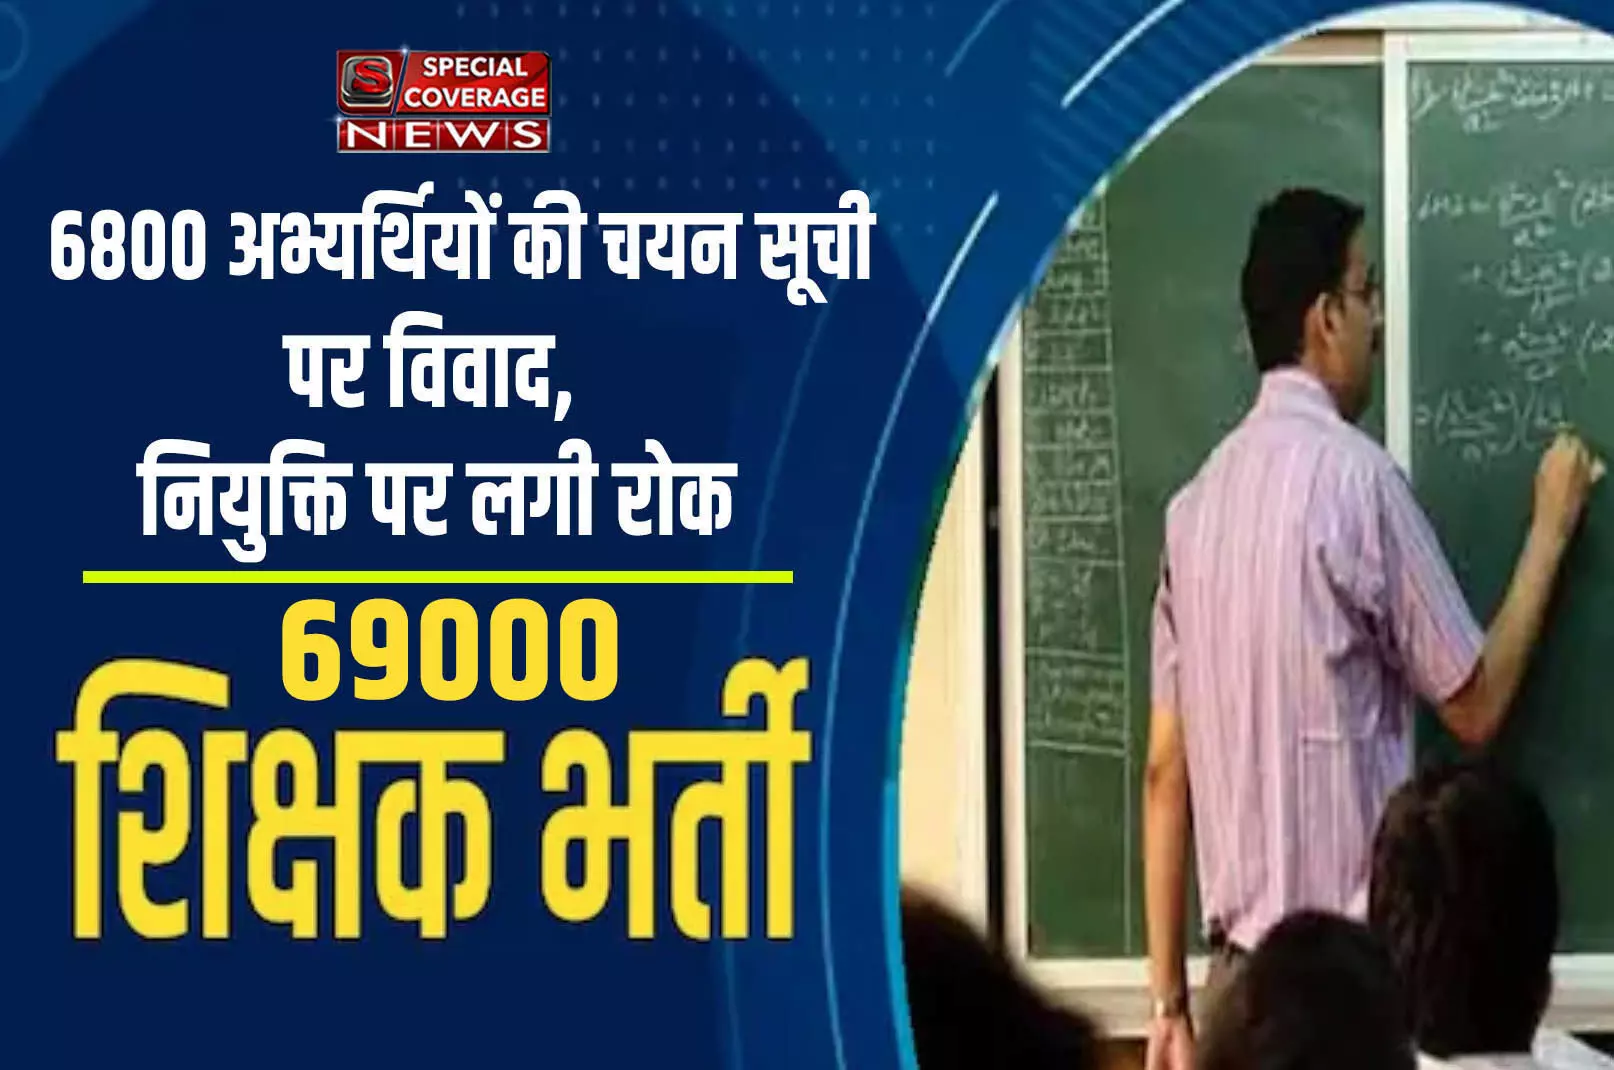 UP शिक्षक भर्ती मामलाः 69 हजार शिक्षक भर्ती में नया मोड़, 6800 अभ्यर्थियों की चयन सूची पर विवाद, नियुक्ति पर लगी रोक